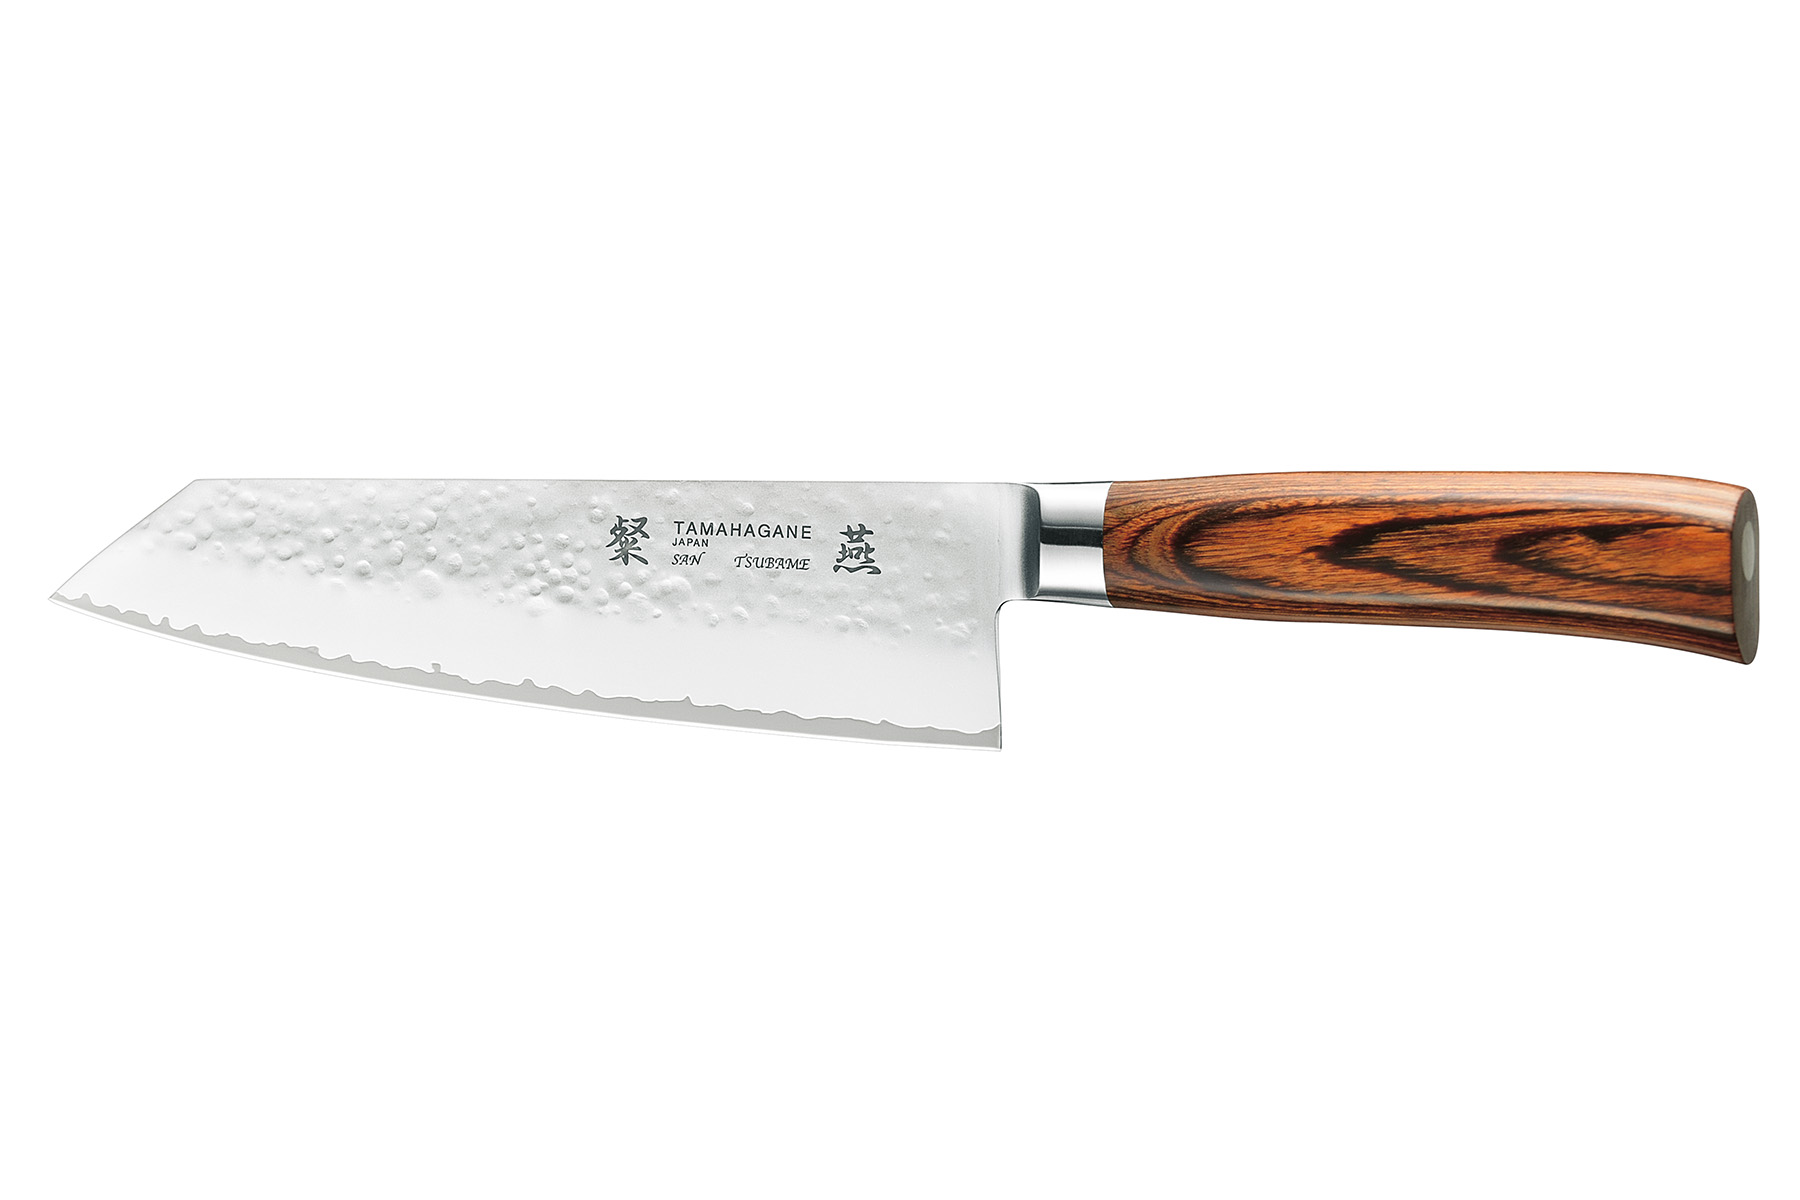 Couteau japonais Tamahagane Tsubame pakkawood - couteau kengata 19 cm